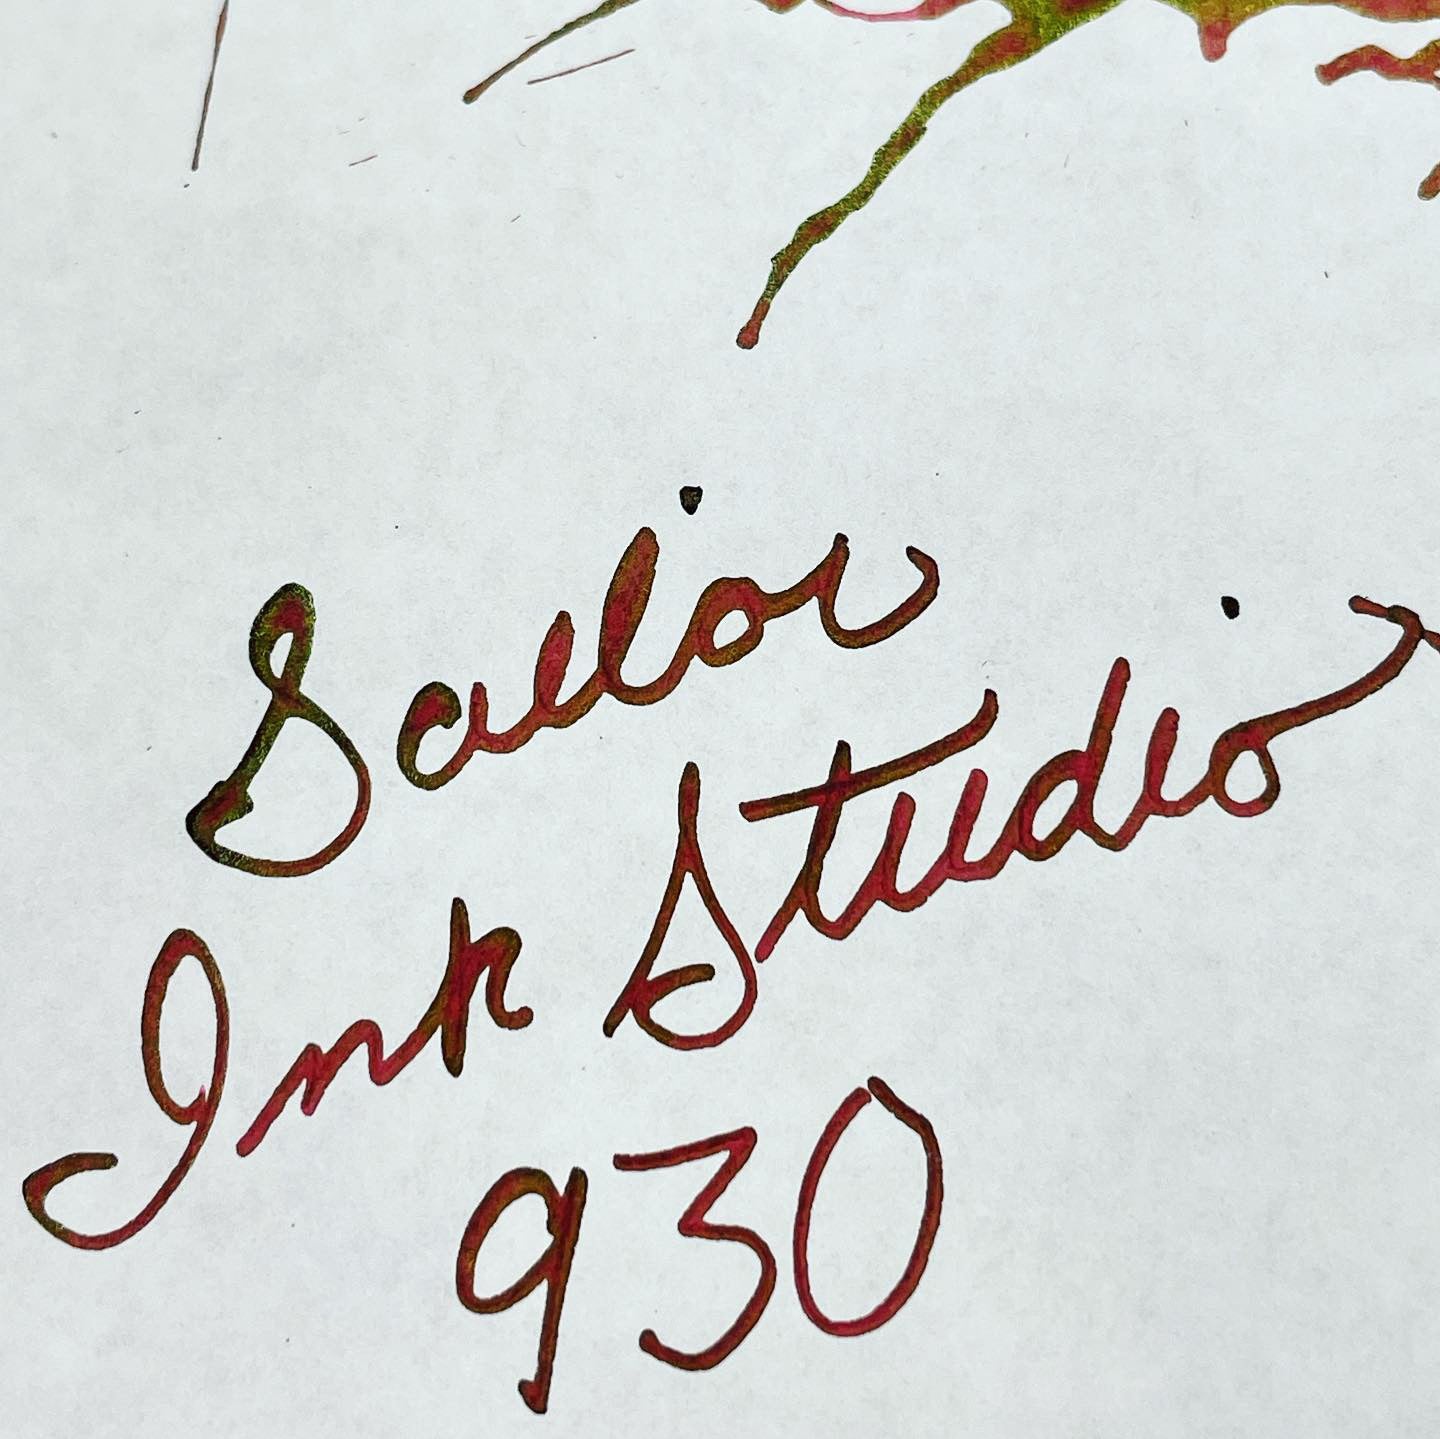 Sailor Ink Studio Bottled Ink - #930 - 20ml-Pen Boutique Ltd